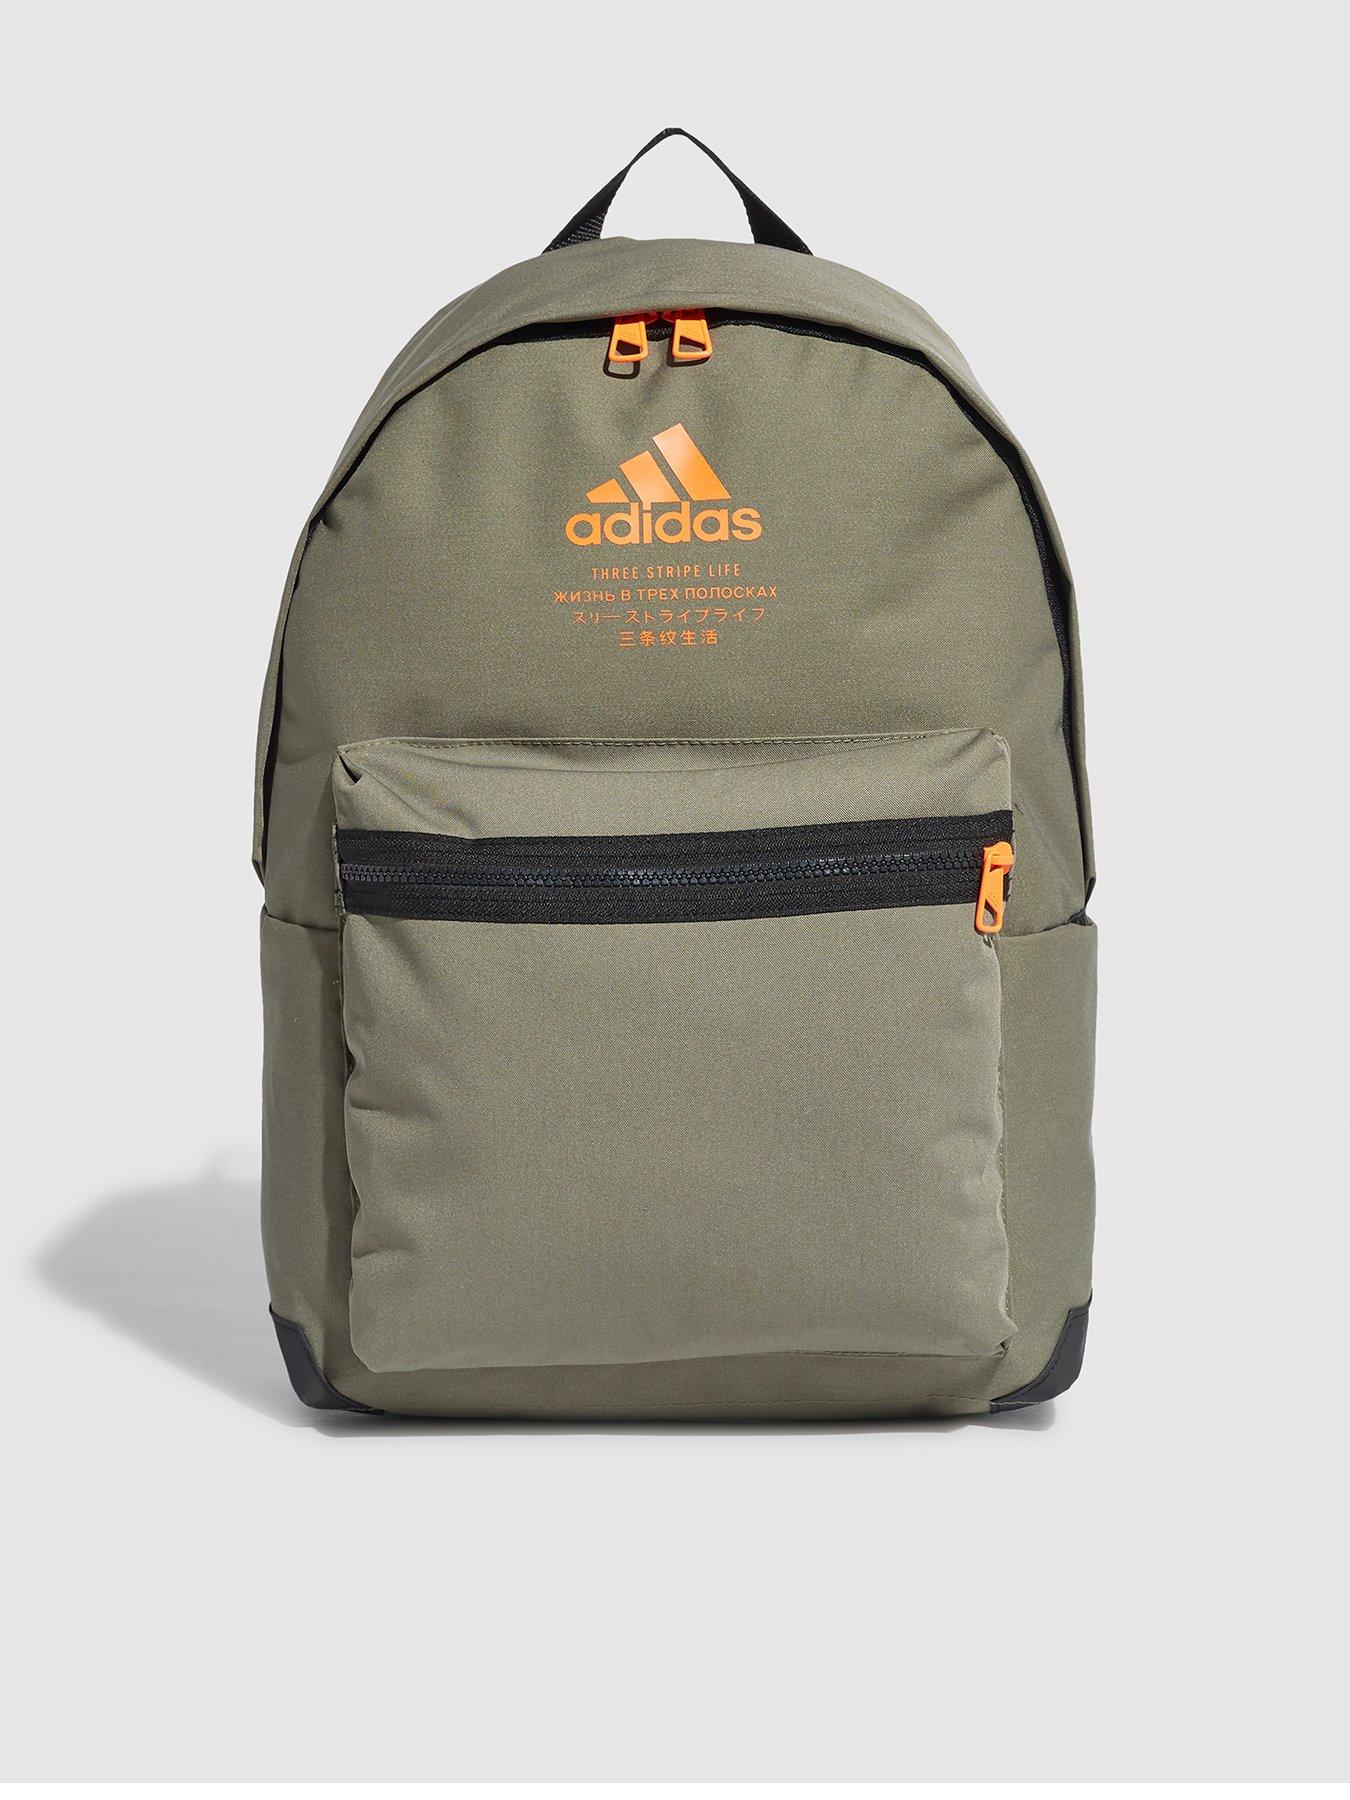 adidas backpack khaki